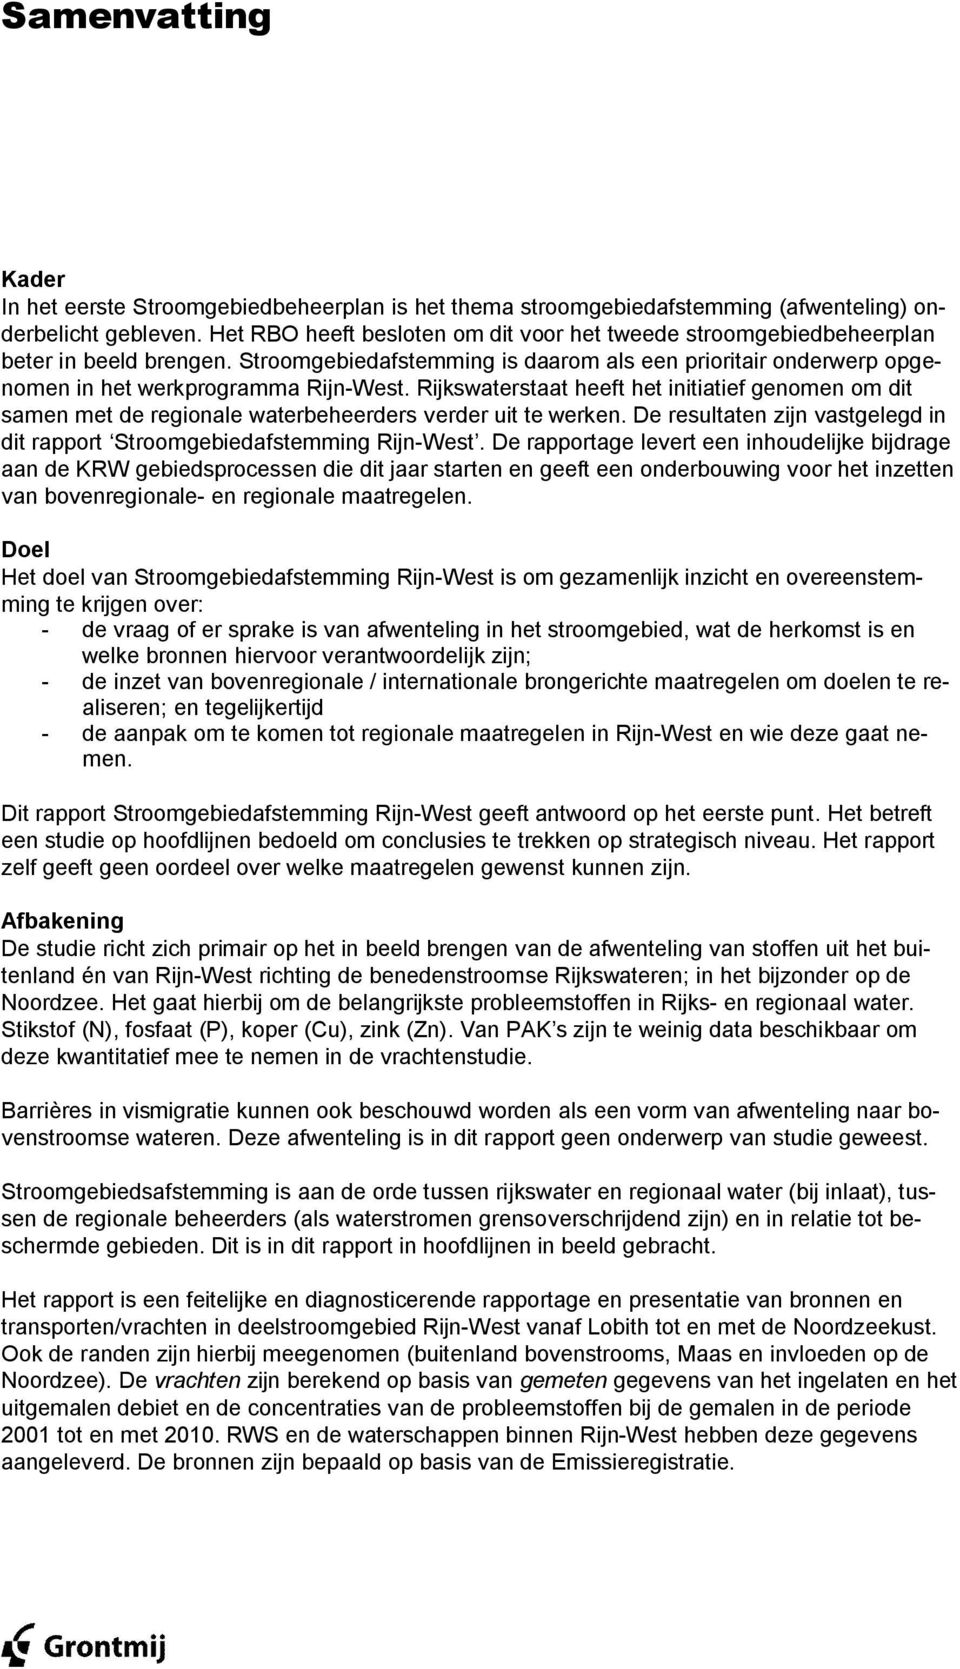 Rijkswaterstaat heeft het initiatief genomen om dit samen met de regionale waterbeheerders verder uit te werken. De resultaten zijn vastgelegd in dit rapport Stroomgebiedafstemming Rijn-West.